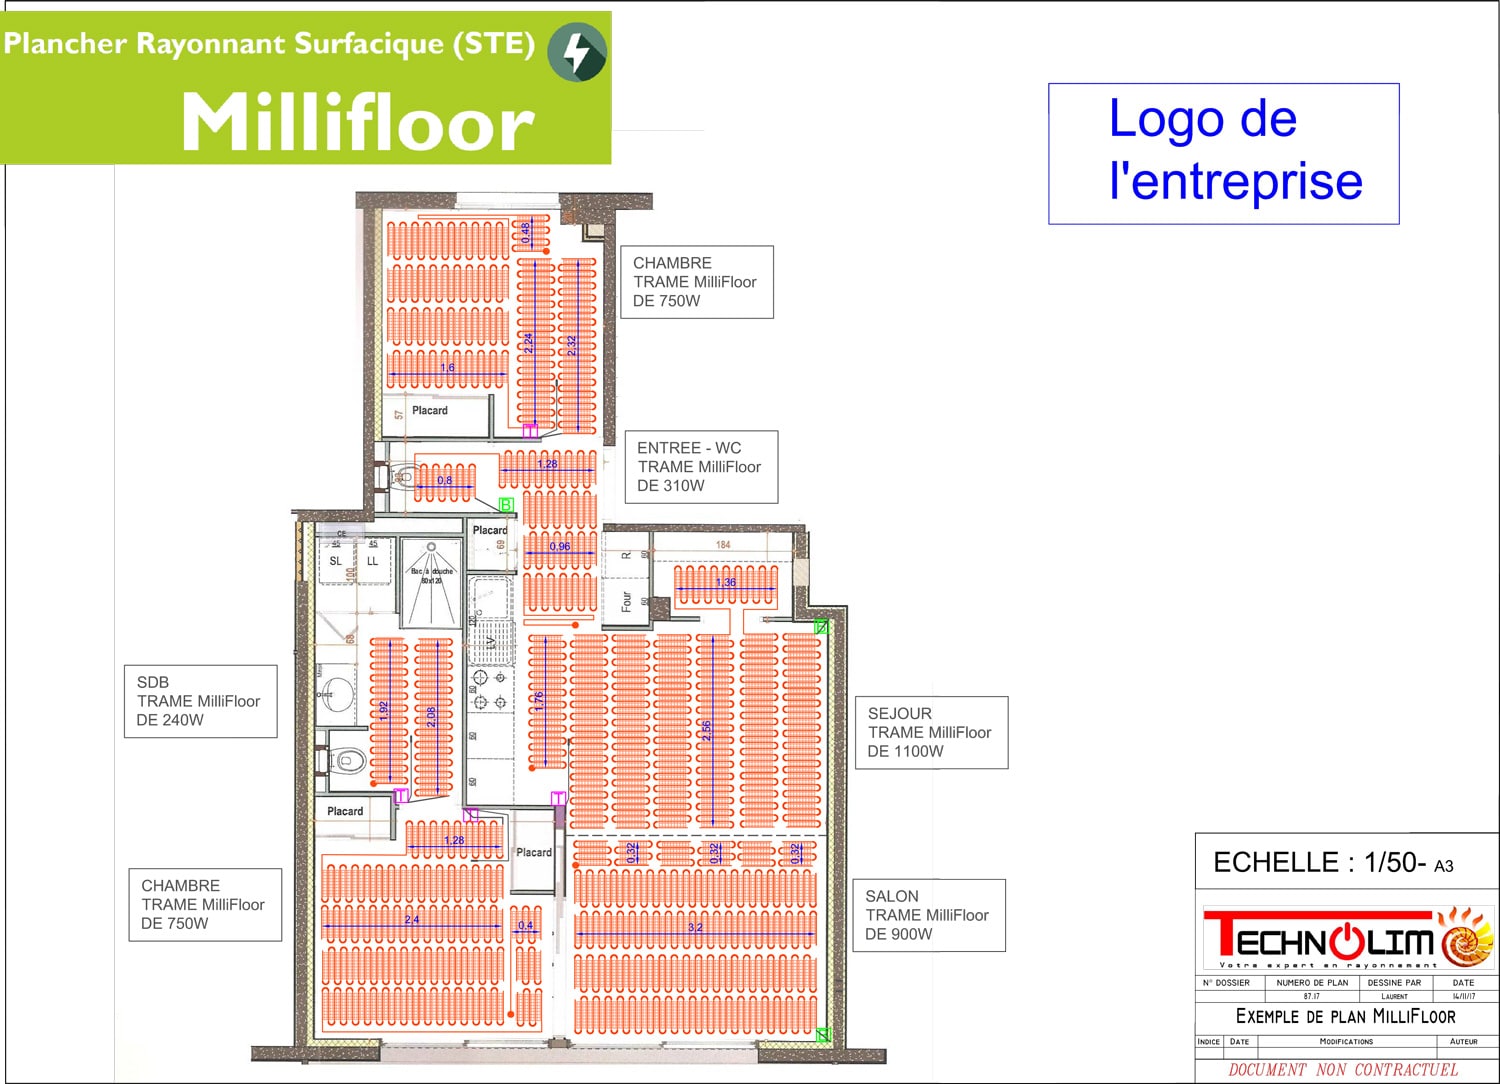 MilliFloor, Le plancher chauffant / rafraîchissant de la société Technolim à Limoges, spécialiste en chaleur rayonnante